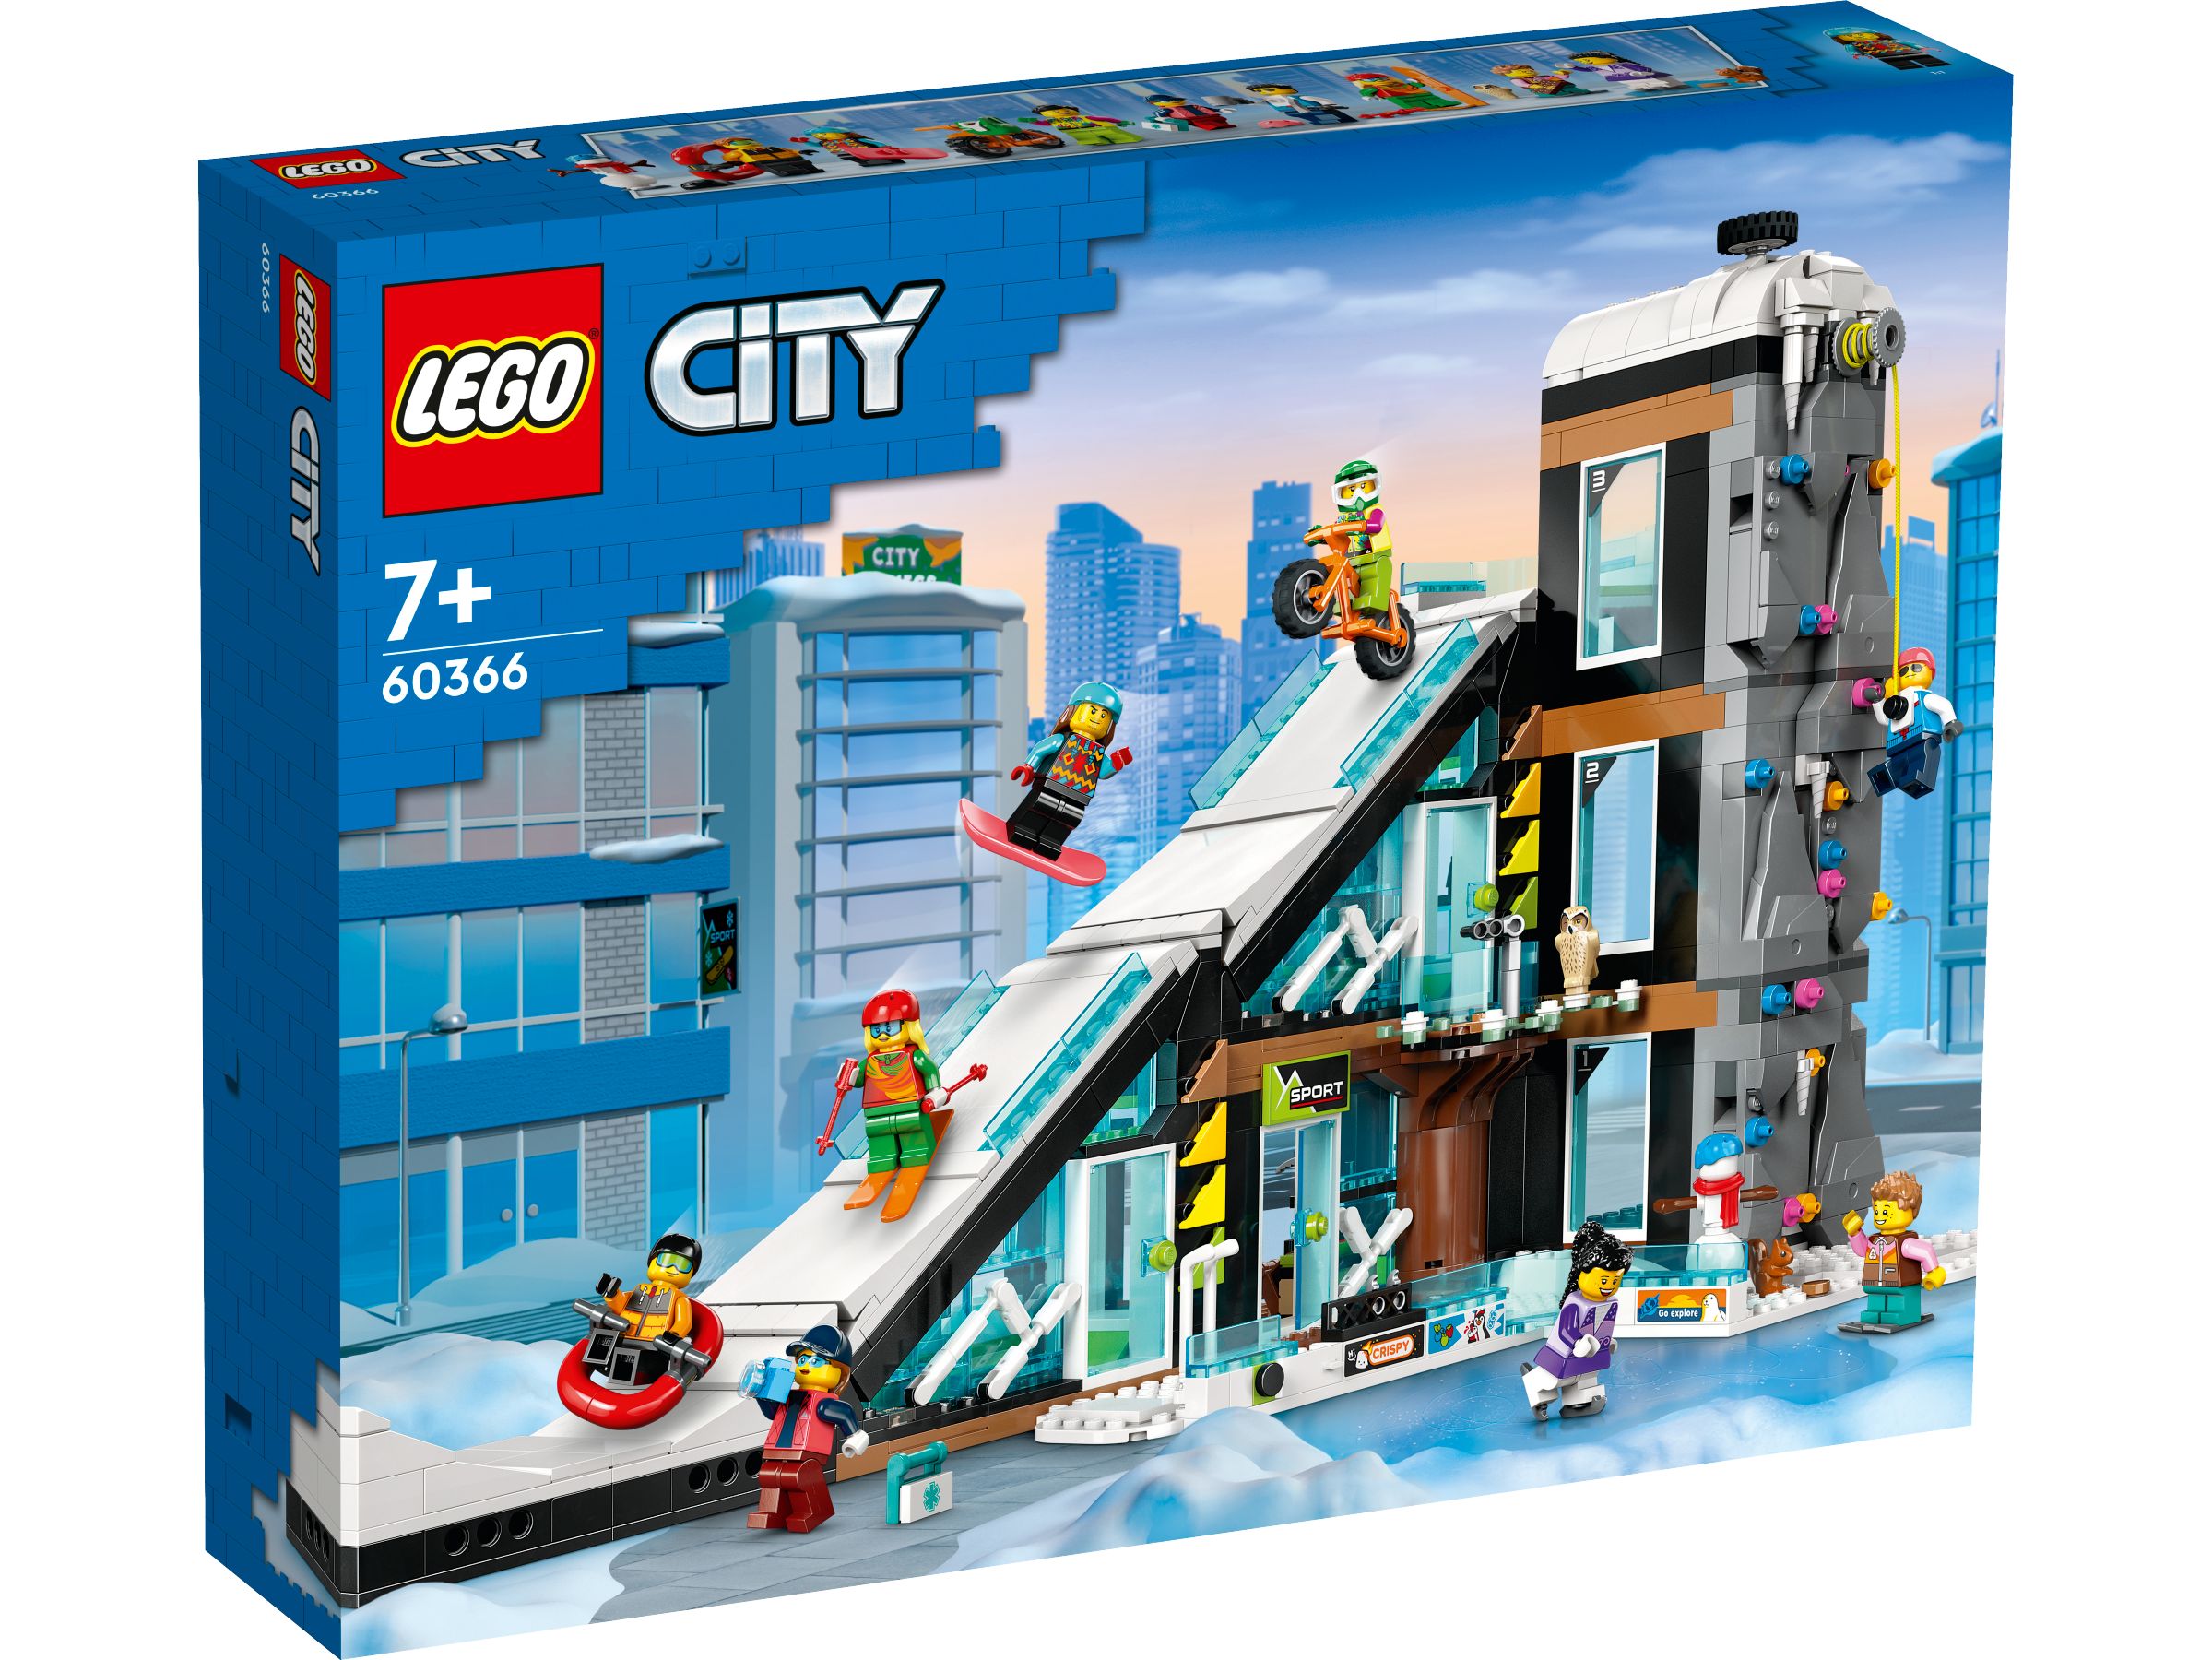 LEGO City 60366 Wintersportpark LEGO_60366_Box1_v29.jpg